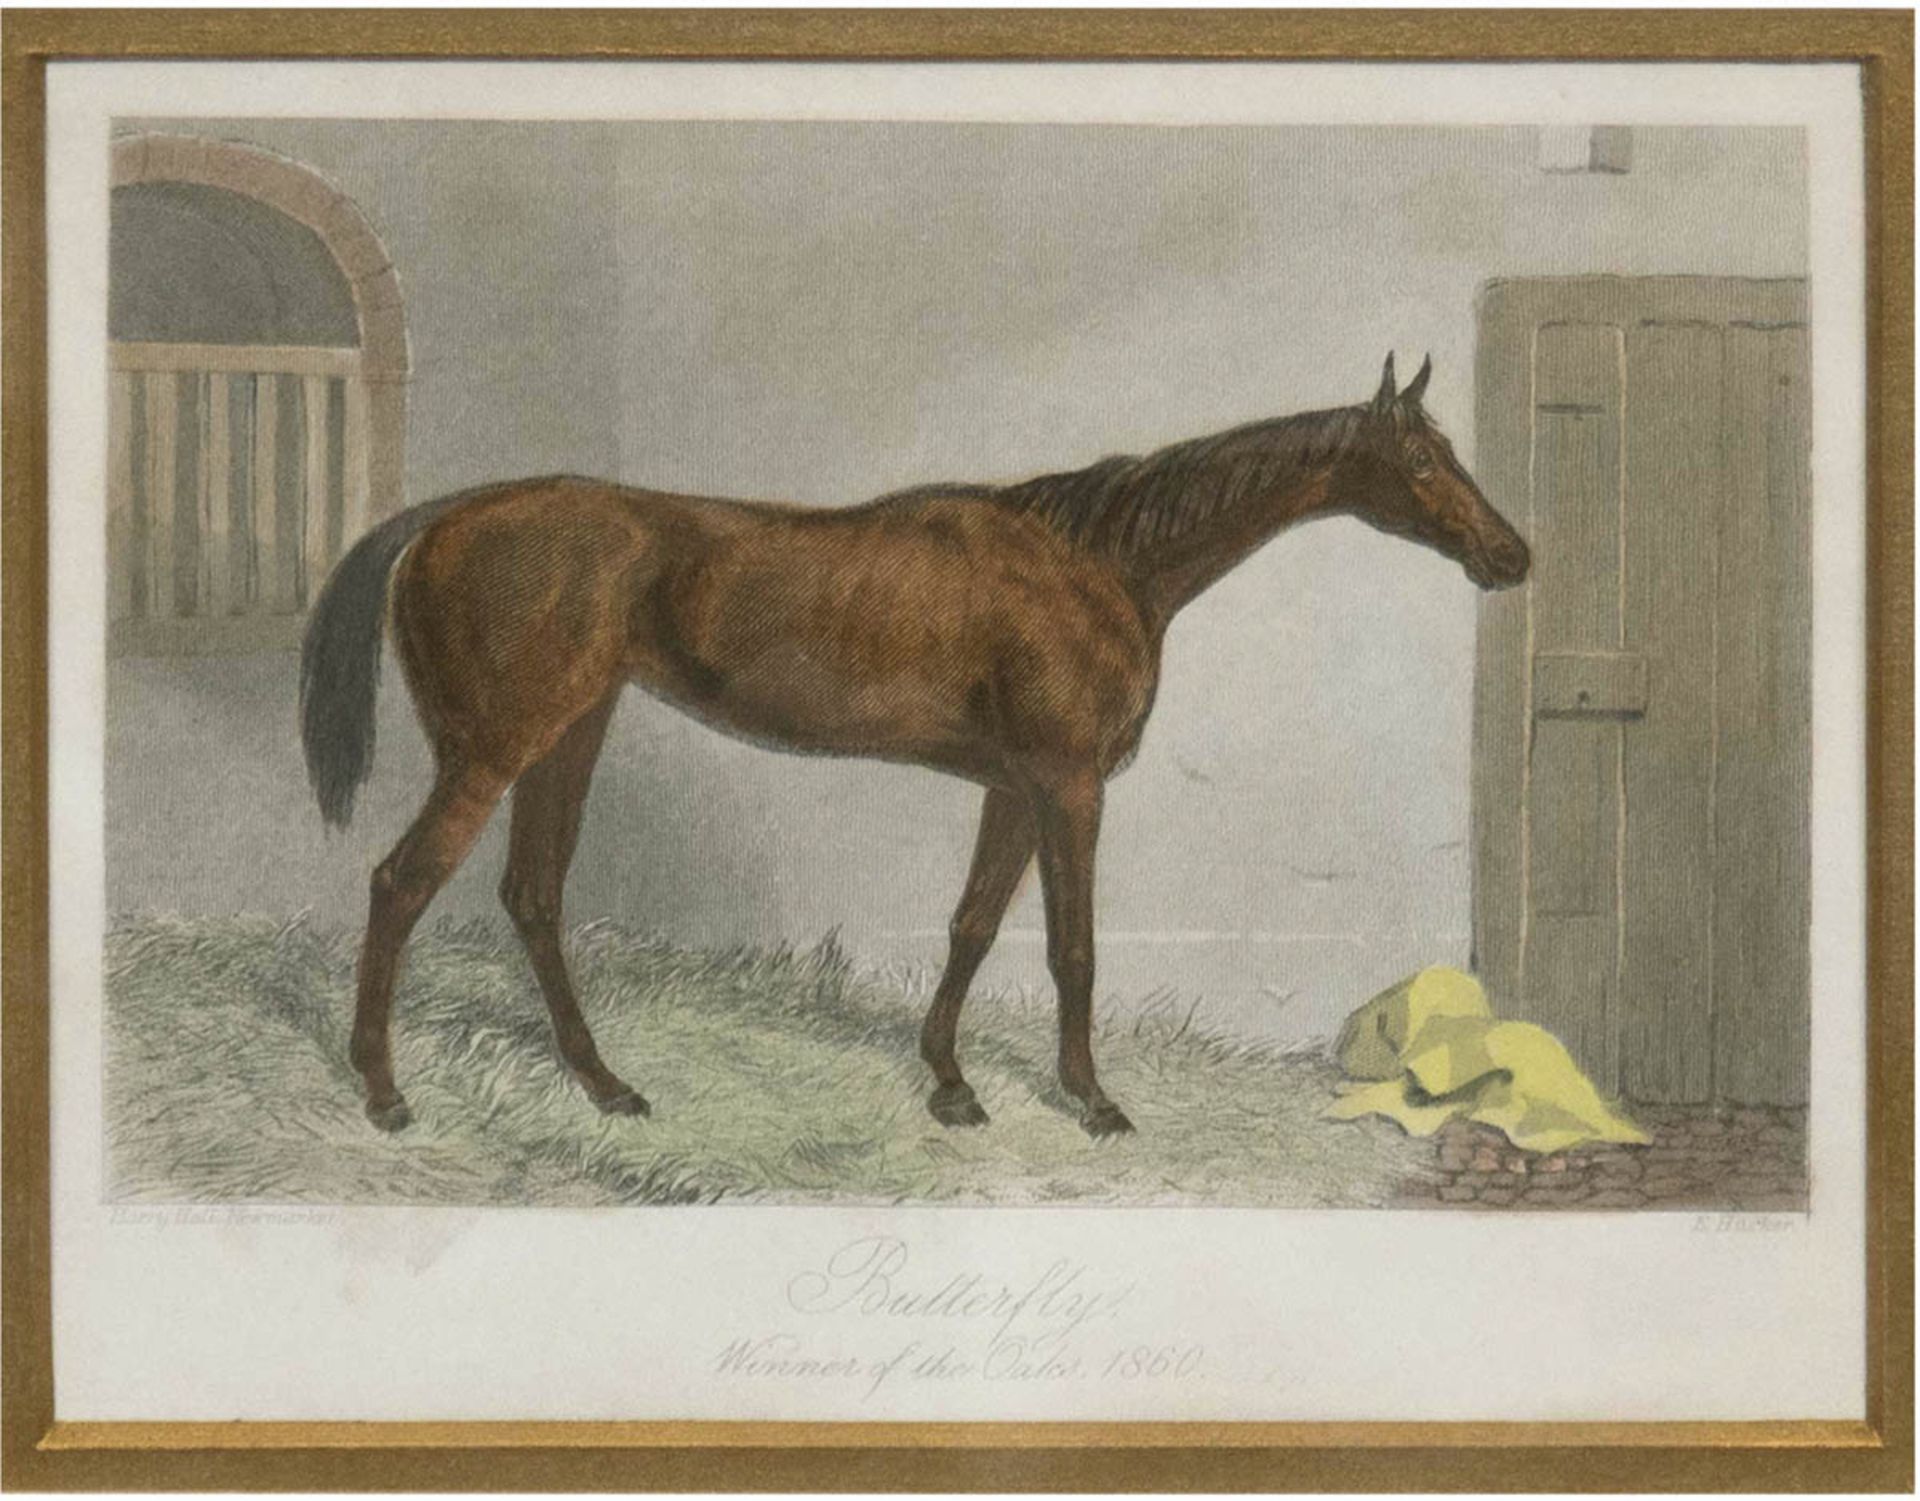 "Pferd 'Butterfly' vor Stalltür stehend", altkol. Stahlstich 1860, 10x15 cm, hinter Glas im Passepa